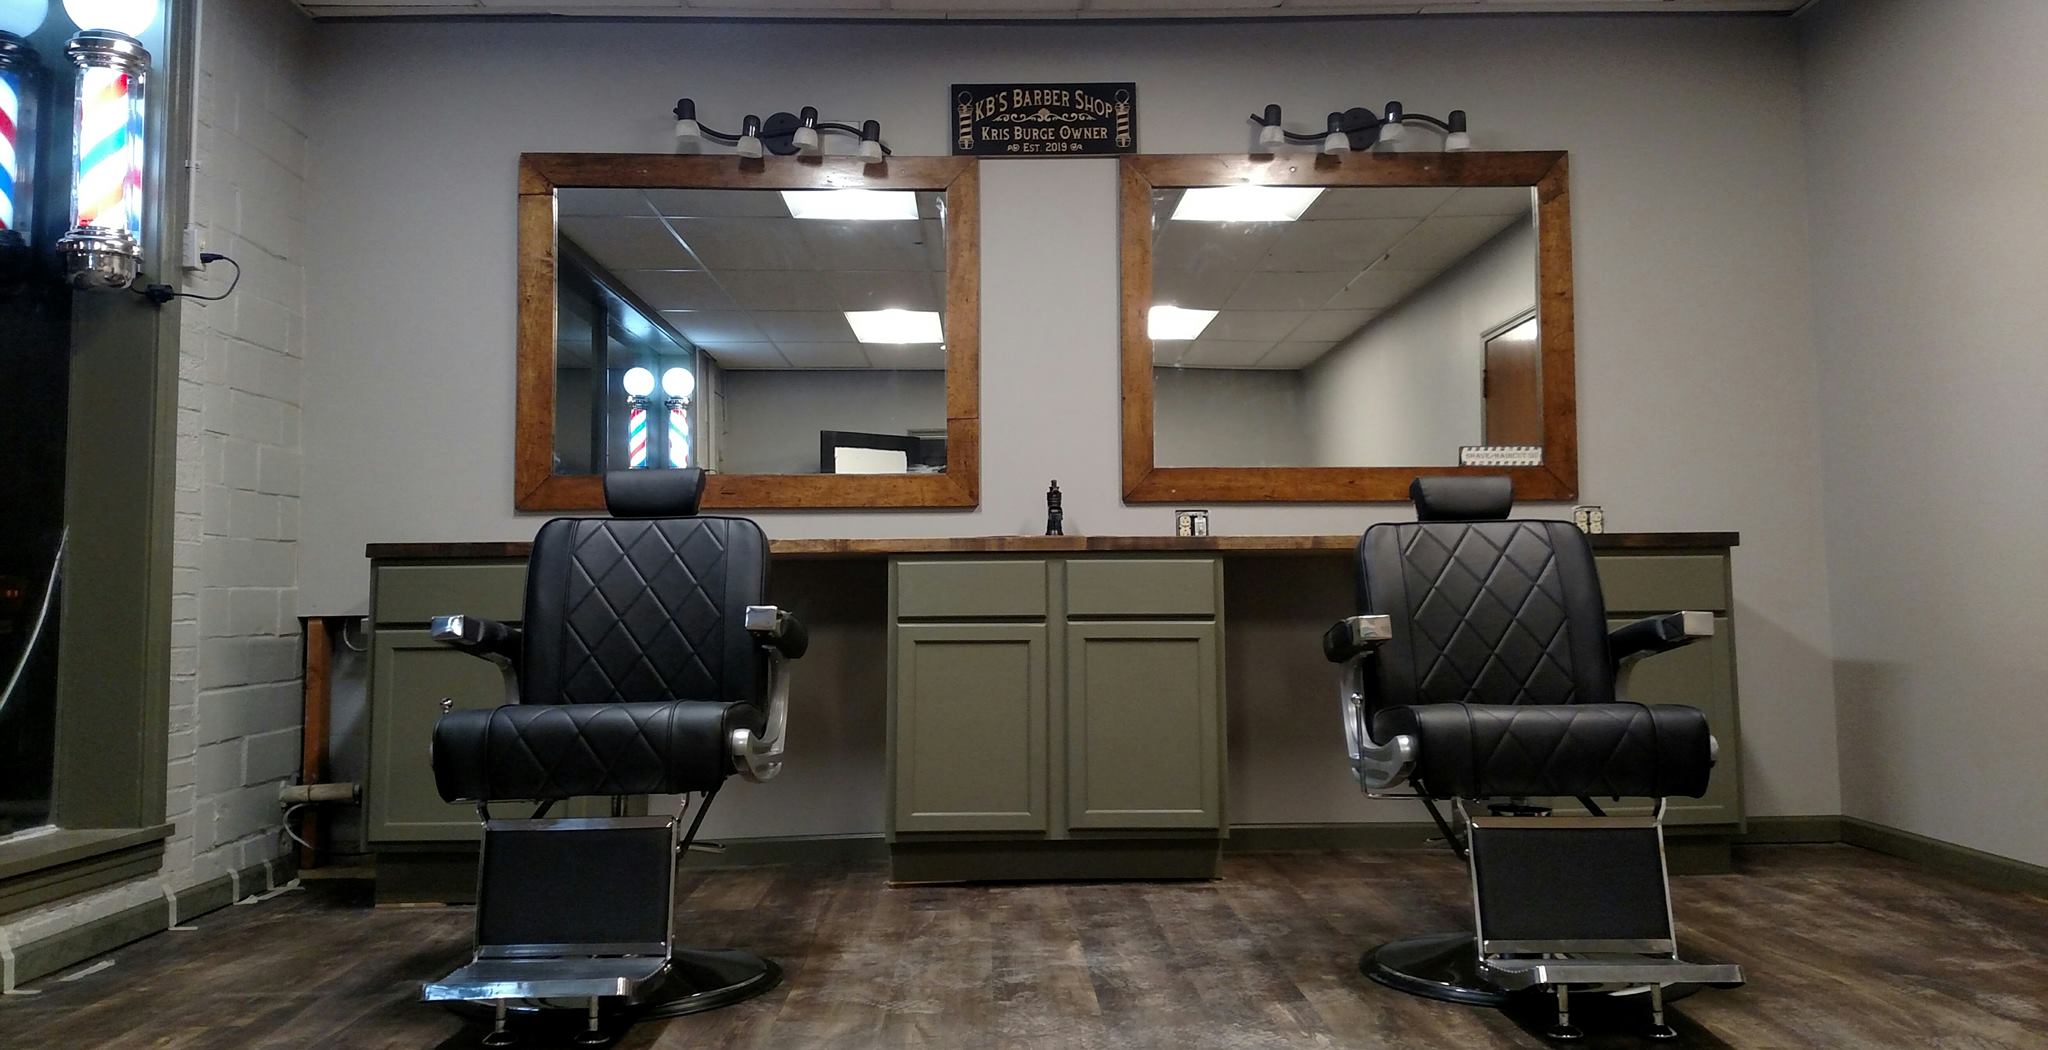 KBs Barbershop